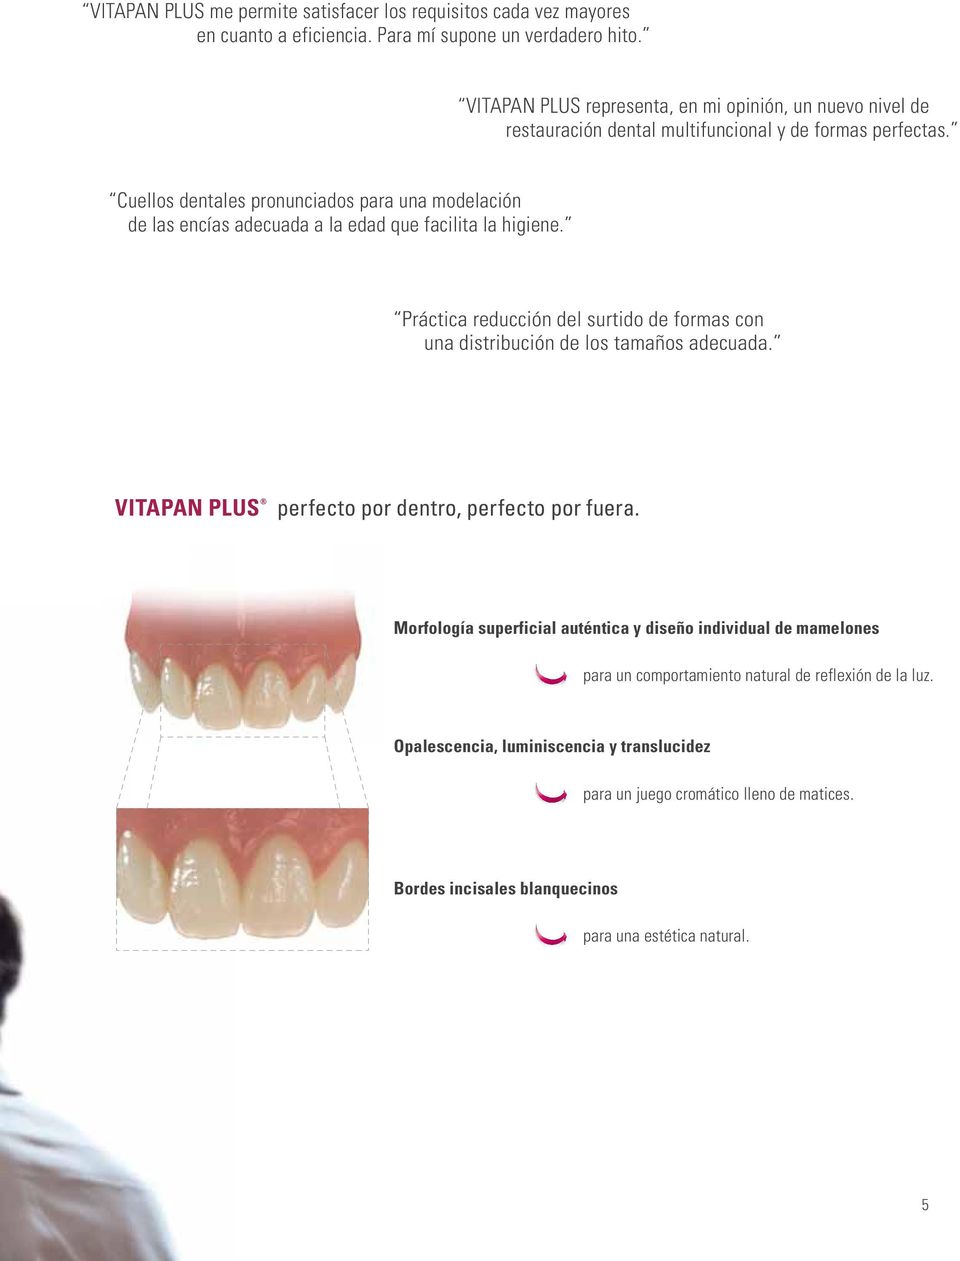 Cuellos dentales pronunciados para una modelación de las encías adecuada a la edad que facilita la higiene.